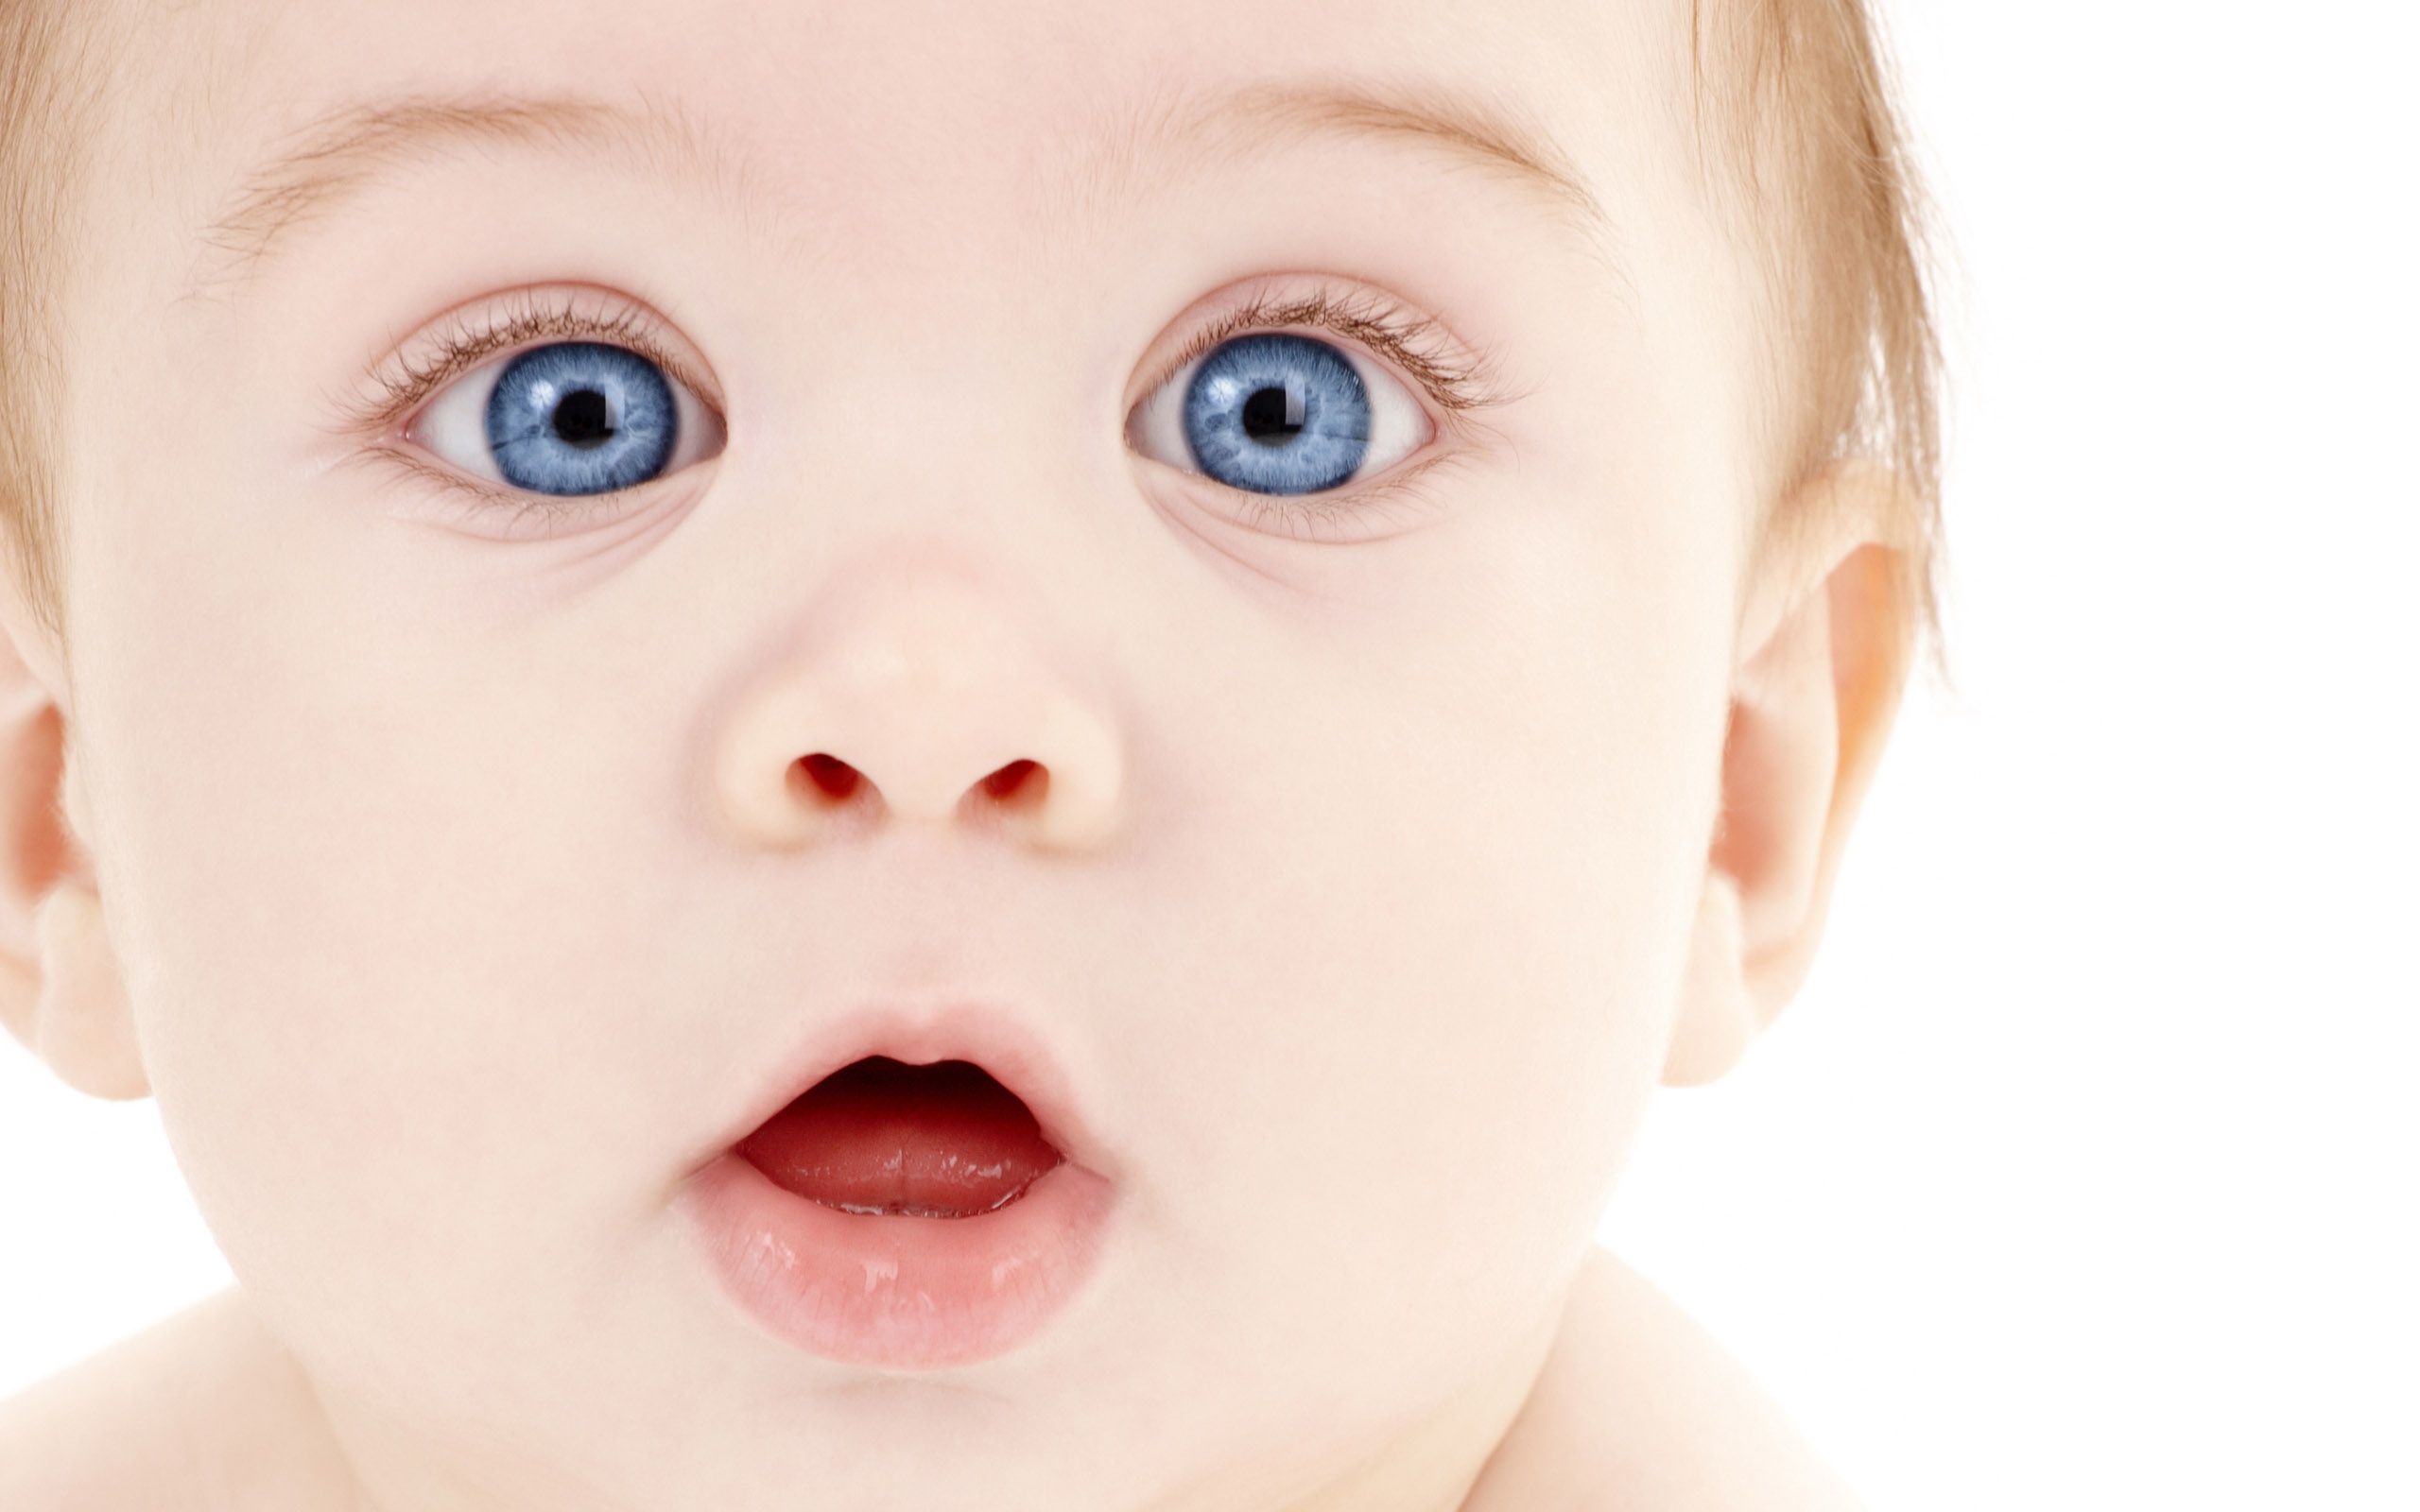 2560 - Blue Eye Cute Baby , HD Wallpaper & Backgrounds